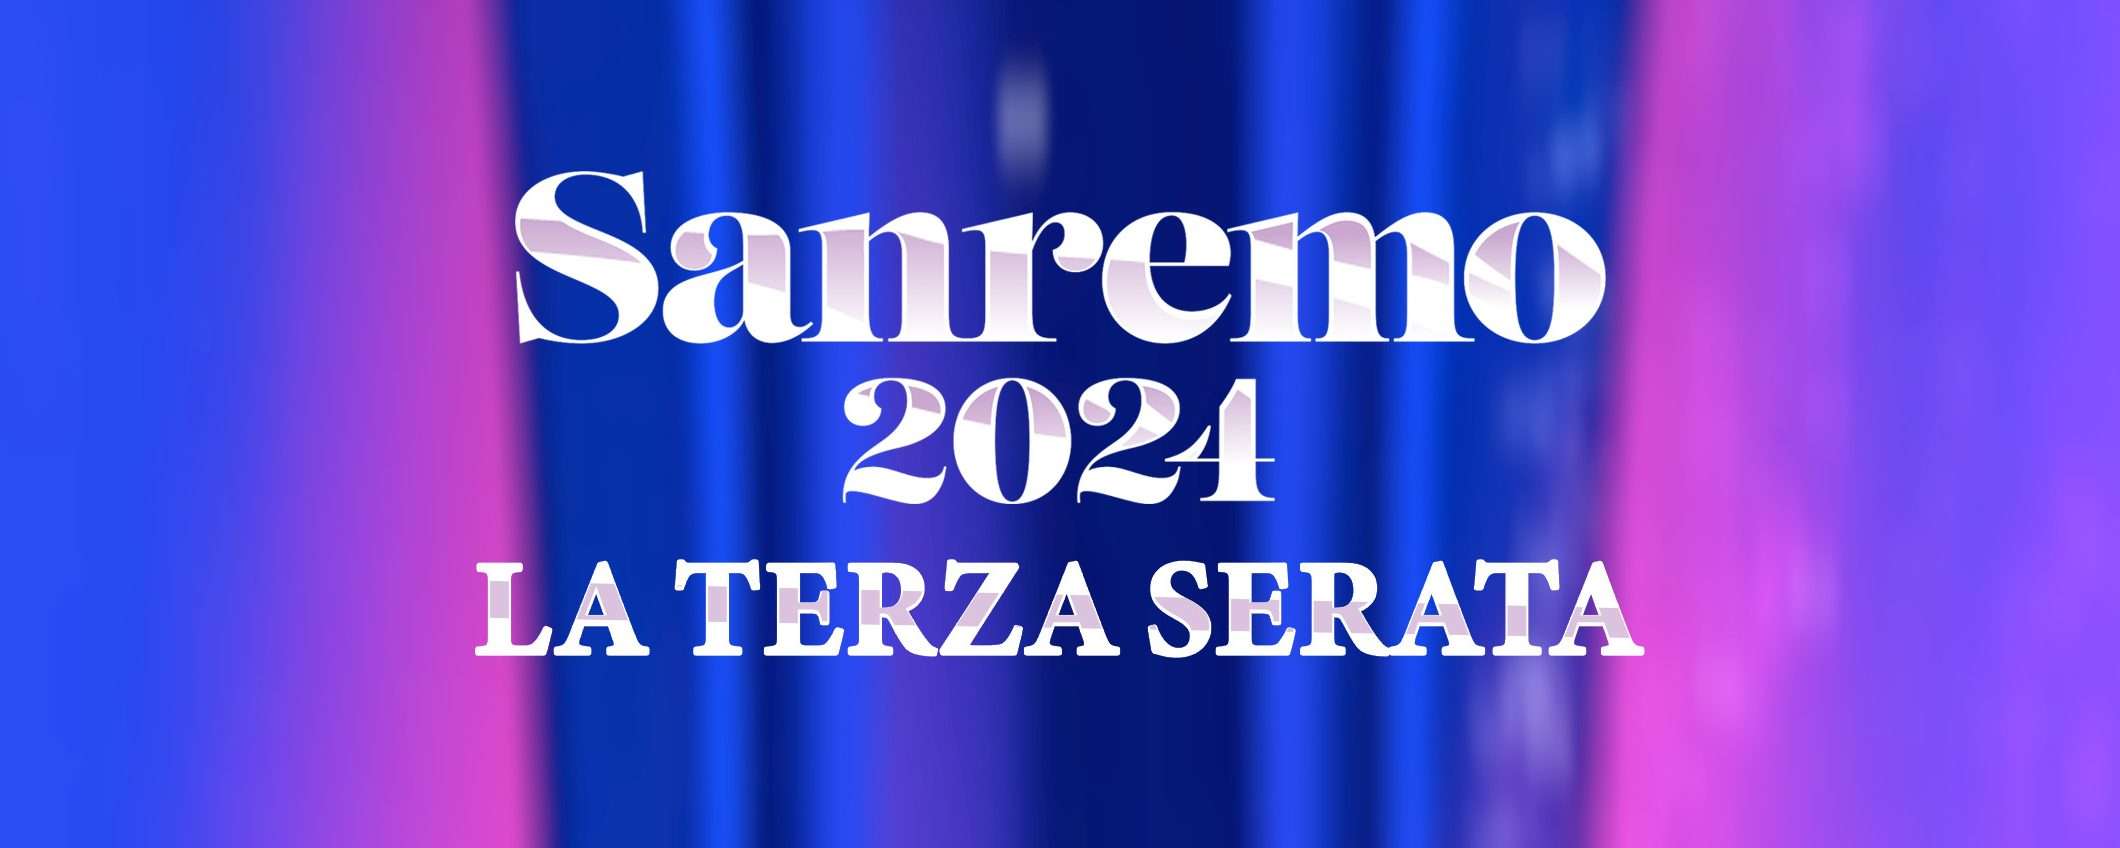 Russell Crowe a Sanremo: la terza serata in streaming dall'estero